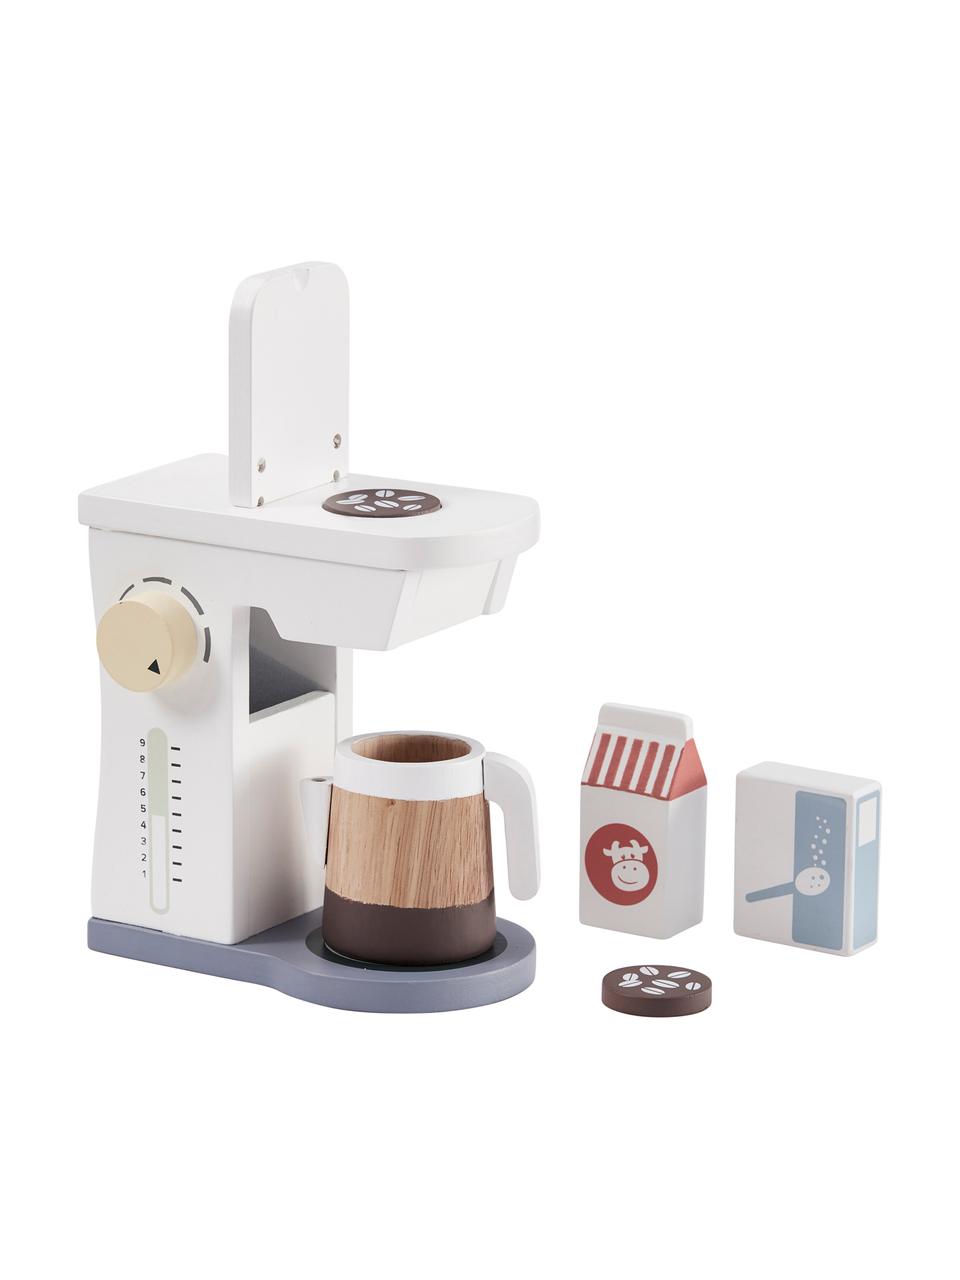 Spielzeug-Set Coffee Machine, Holz, Mehrfarbig, B 16 x H 20 cm